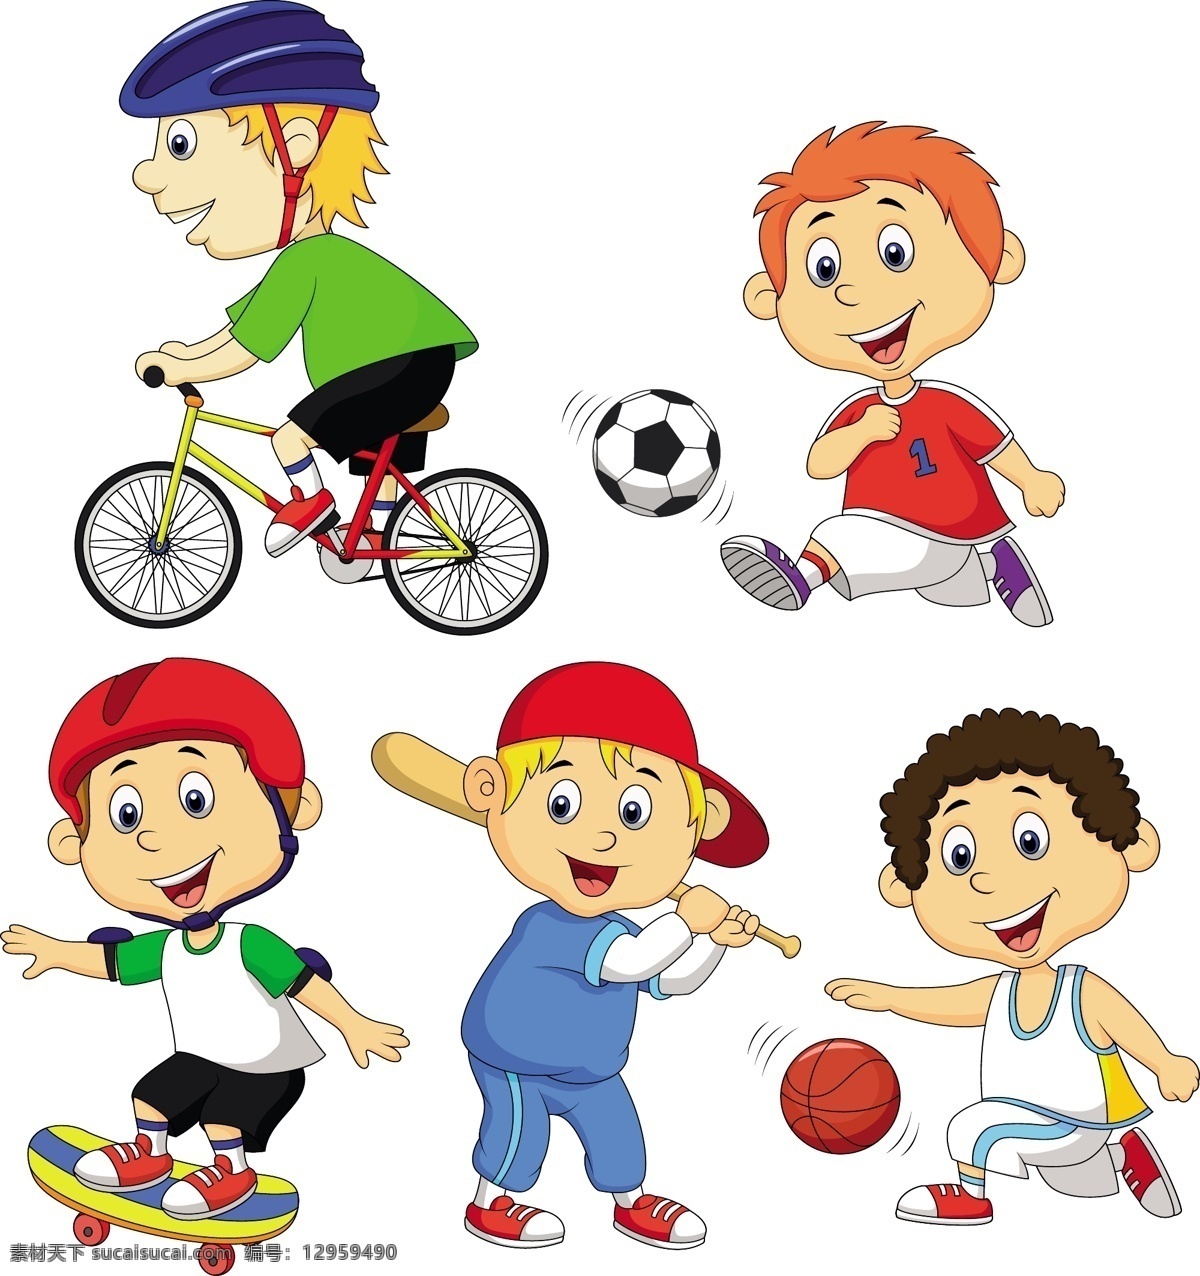 儿童 玩耍 卡通 踢足球 小足球运动员 打篮球 骑自行车 卡通乐园 儿童绘画 手绘 小男孩 卡通插画 卡通人物 卡通形象 幼儿绘画 儿童世界 卡通设计 矢量 儿童幼儿 矢量人物